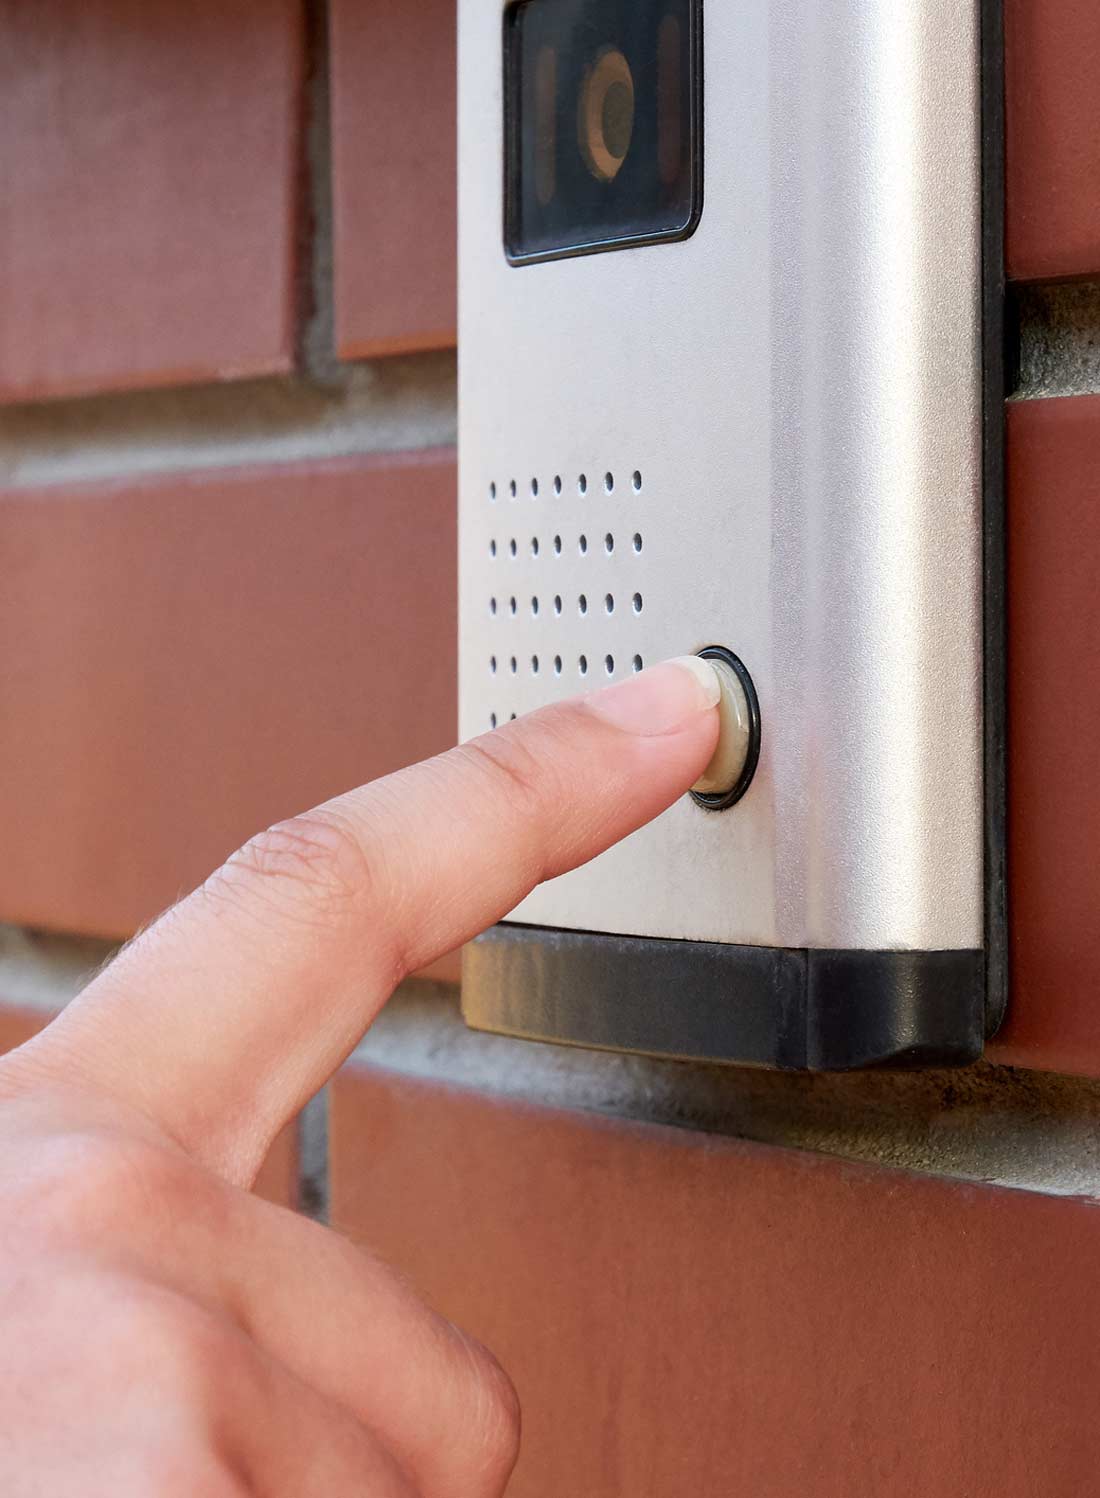 finger on security doorbell